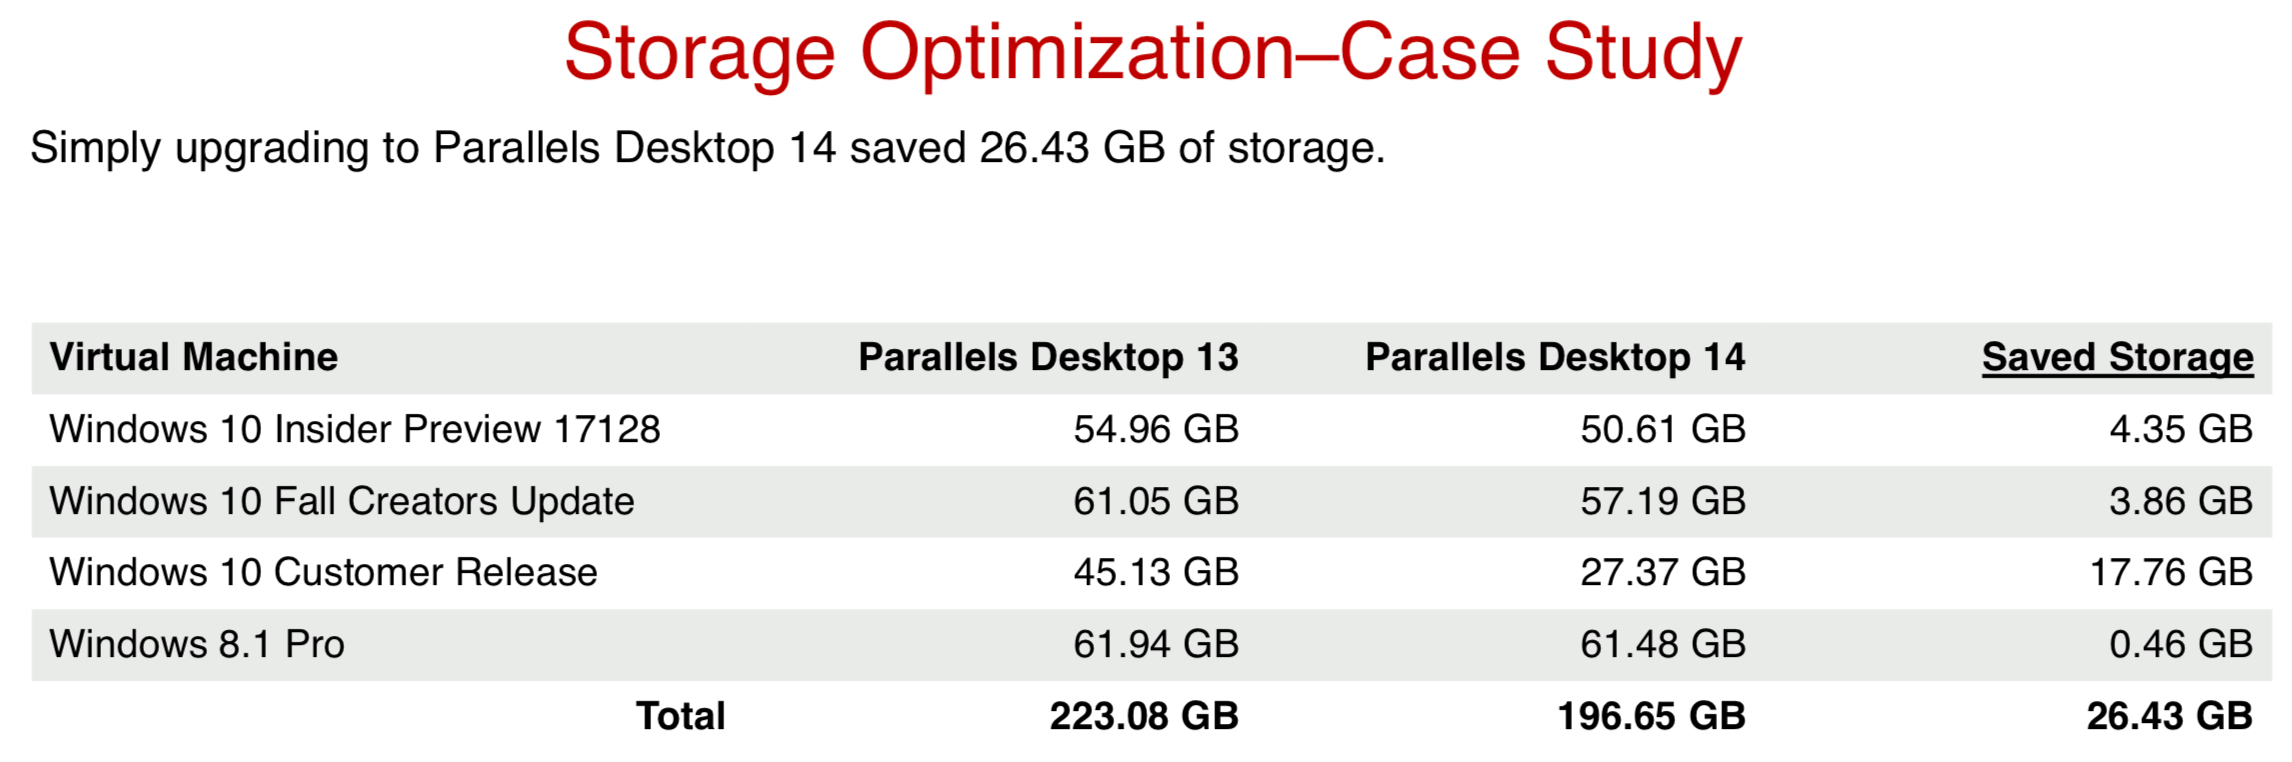 Storage optimization for Parallels Desktop 14